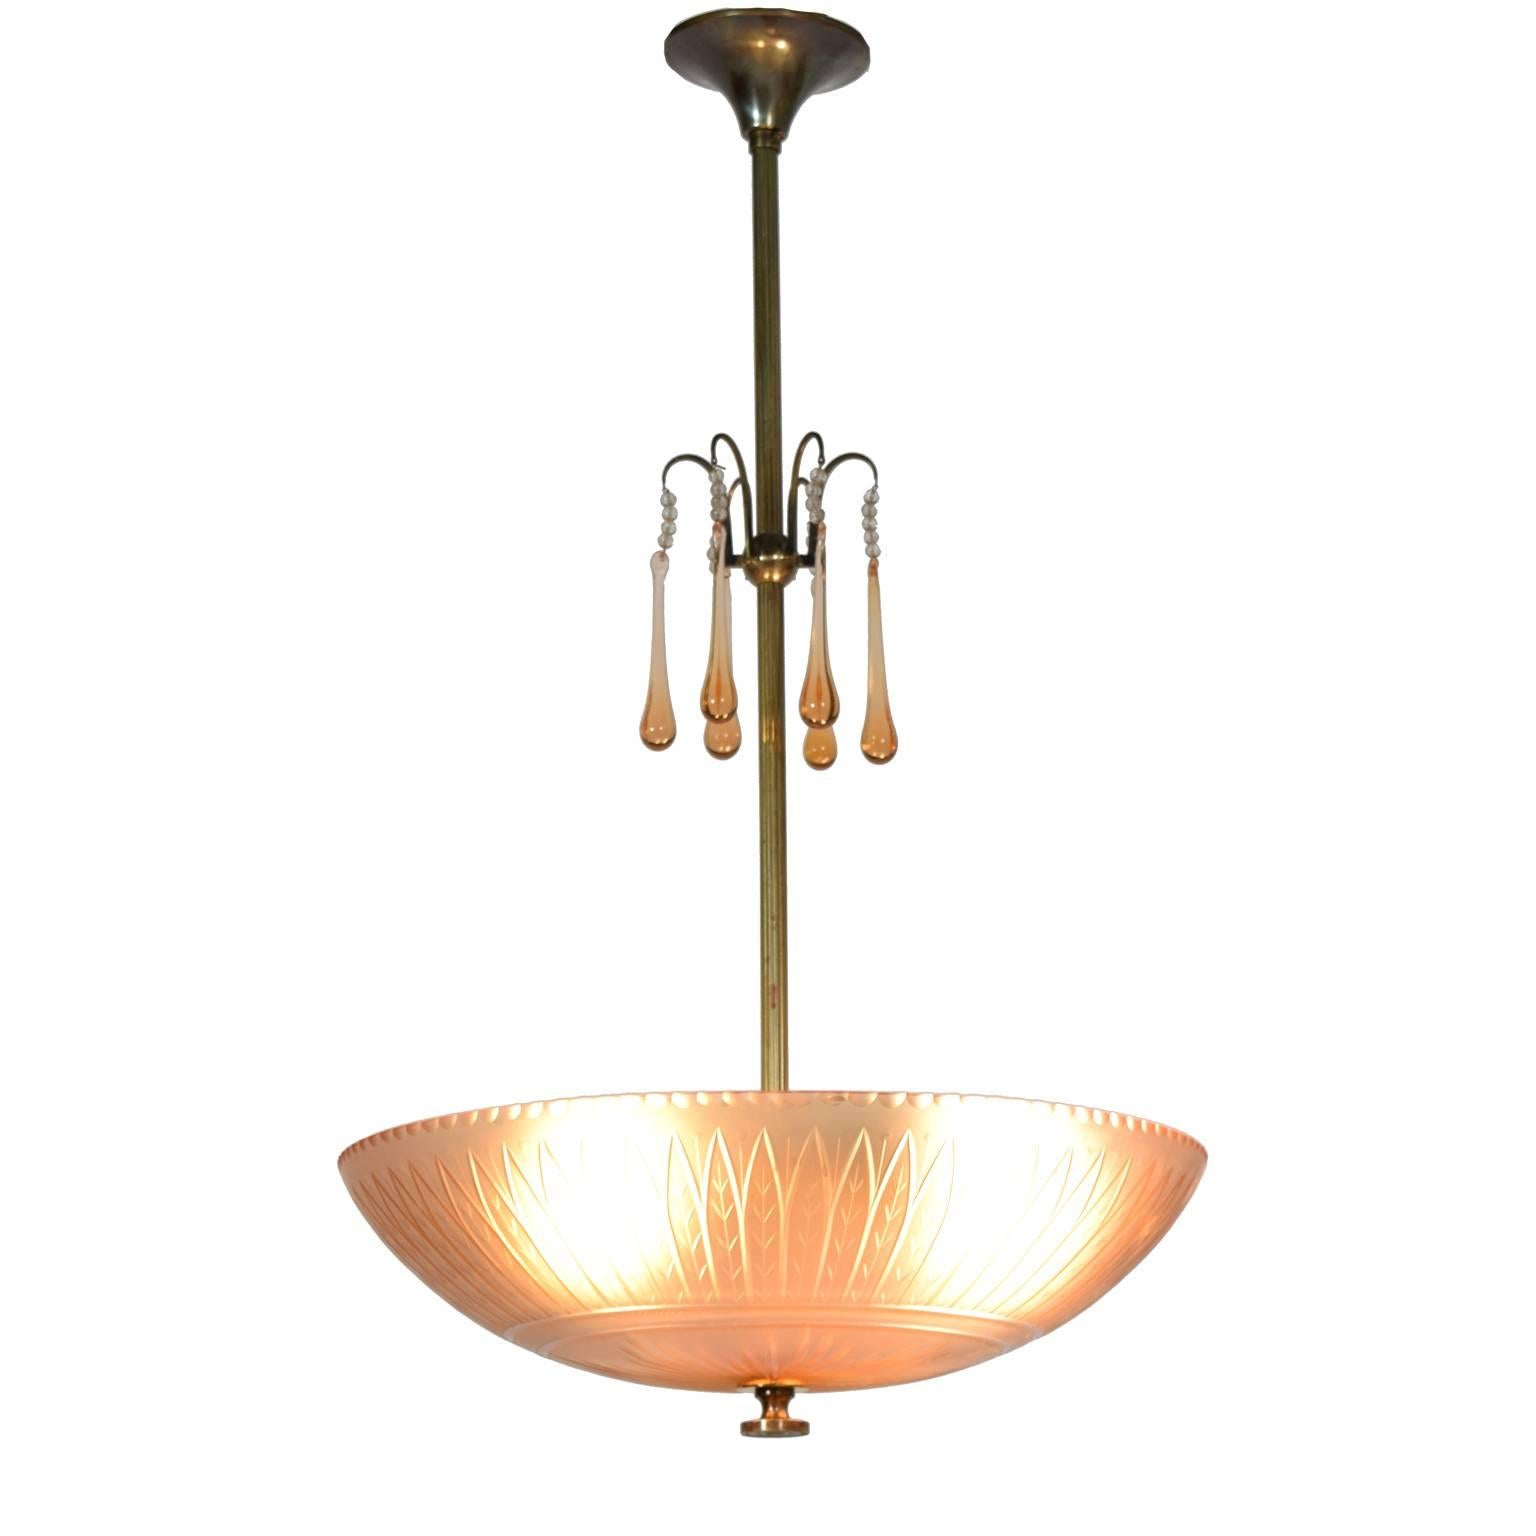 Scandinavian Modern Orrefors Ceiling Lamp by Simon Gate, 1930s